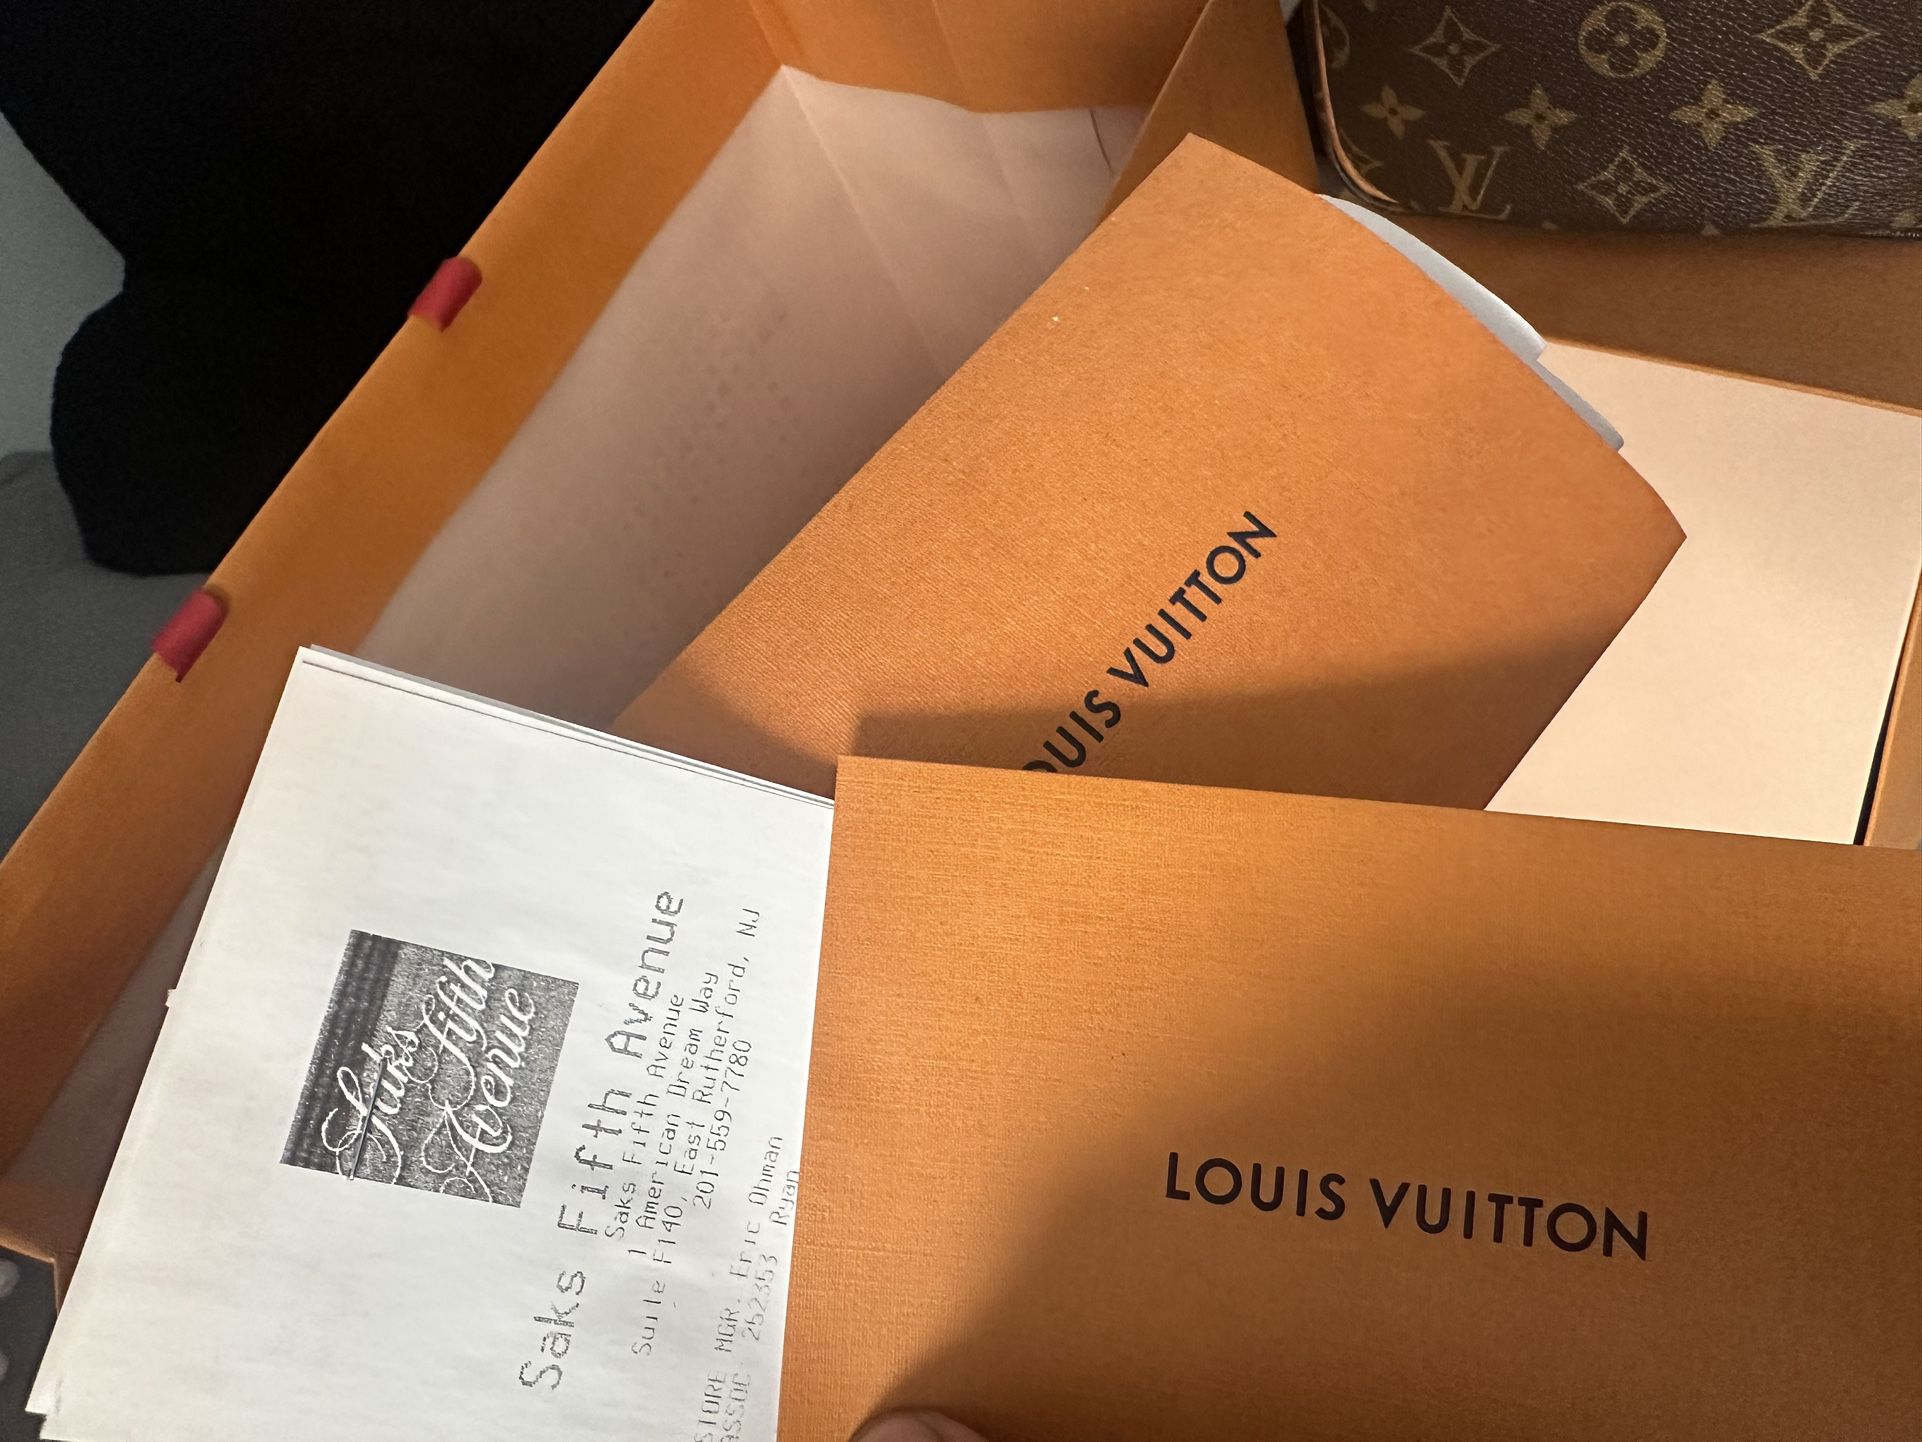 Louis Vuitton Speedy 30 for Sale in Beachwood, NJ - OfferUp